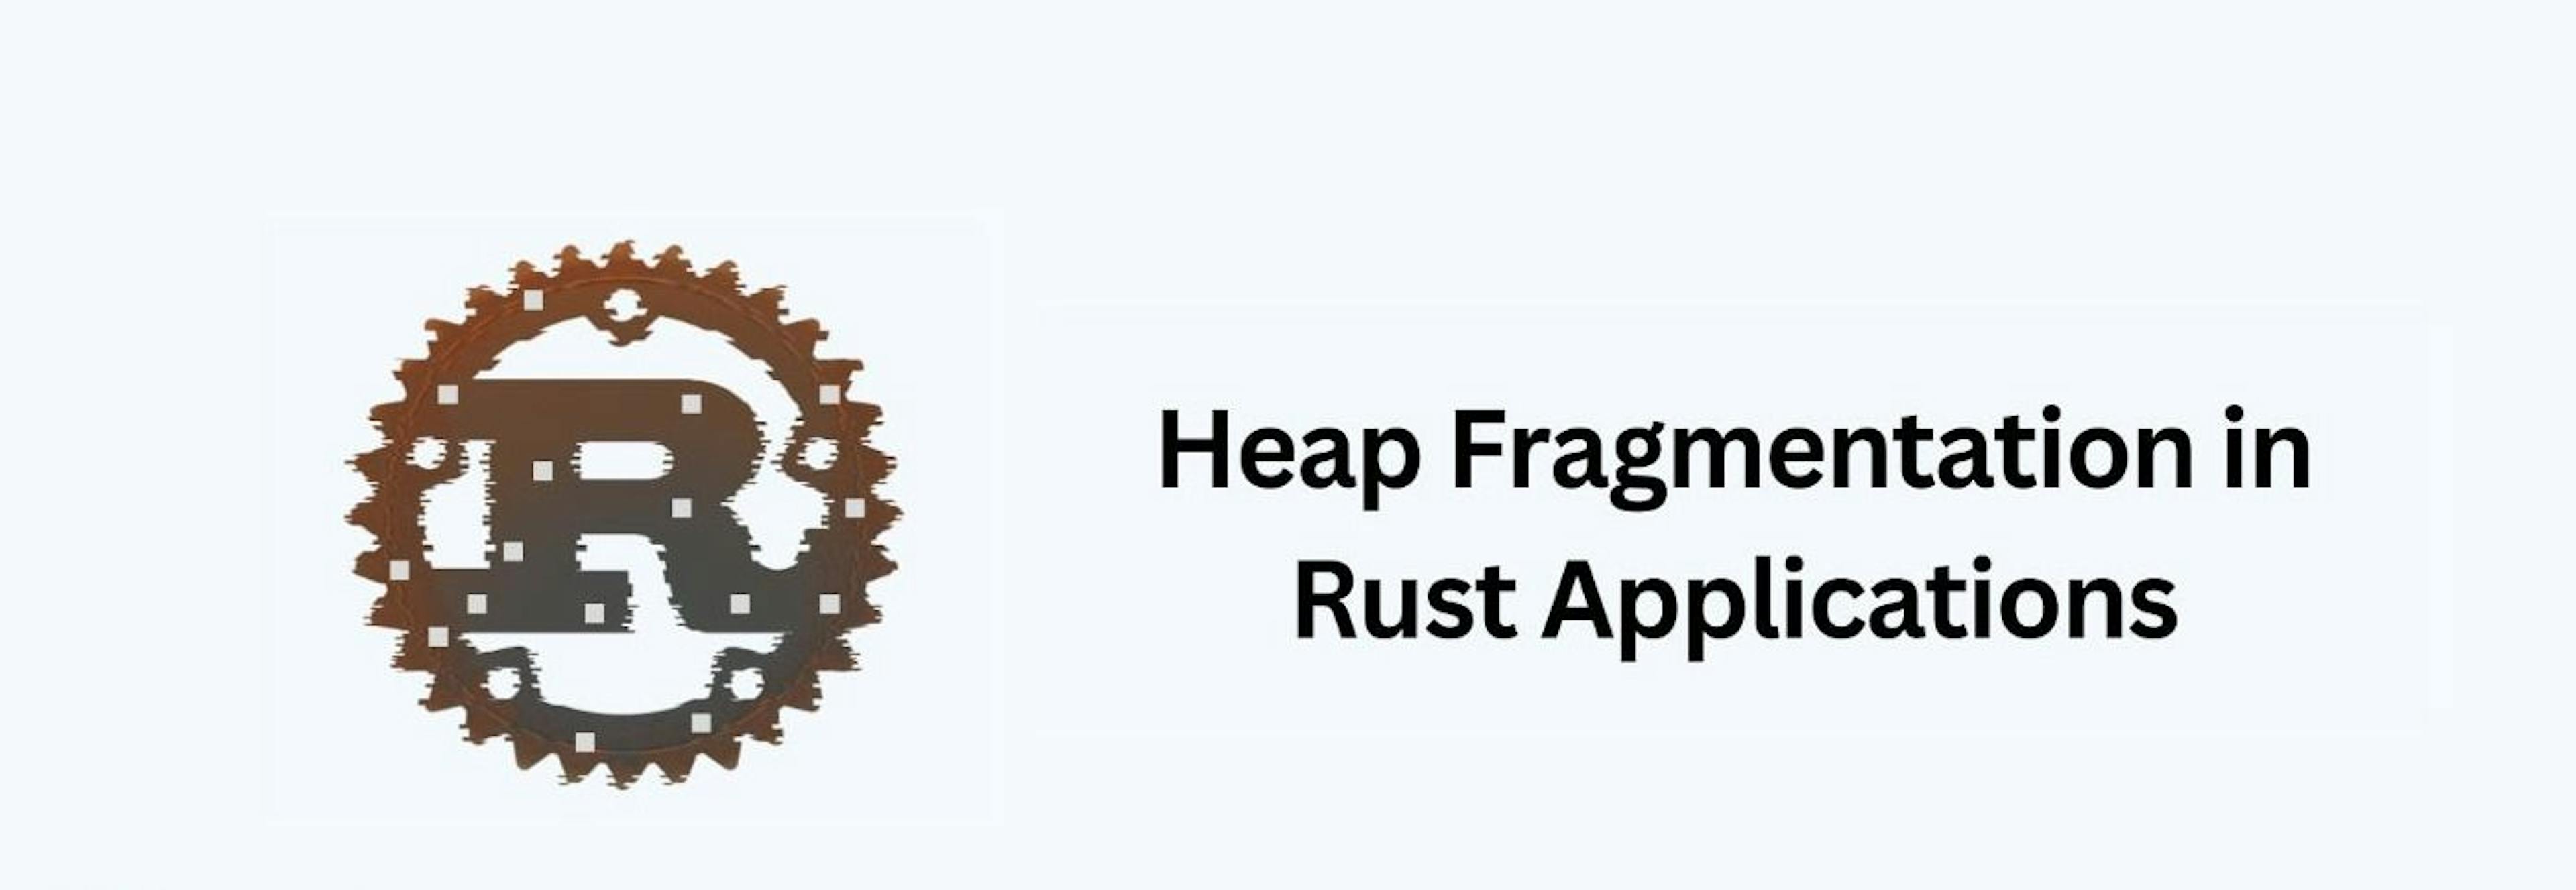 featured image - Cách phát hiện và tránh phân mảnh đống trong ứng dụng Rust